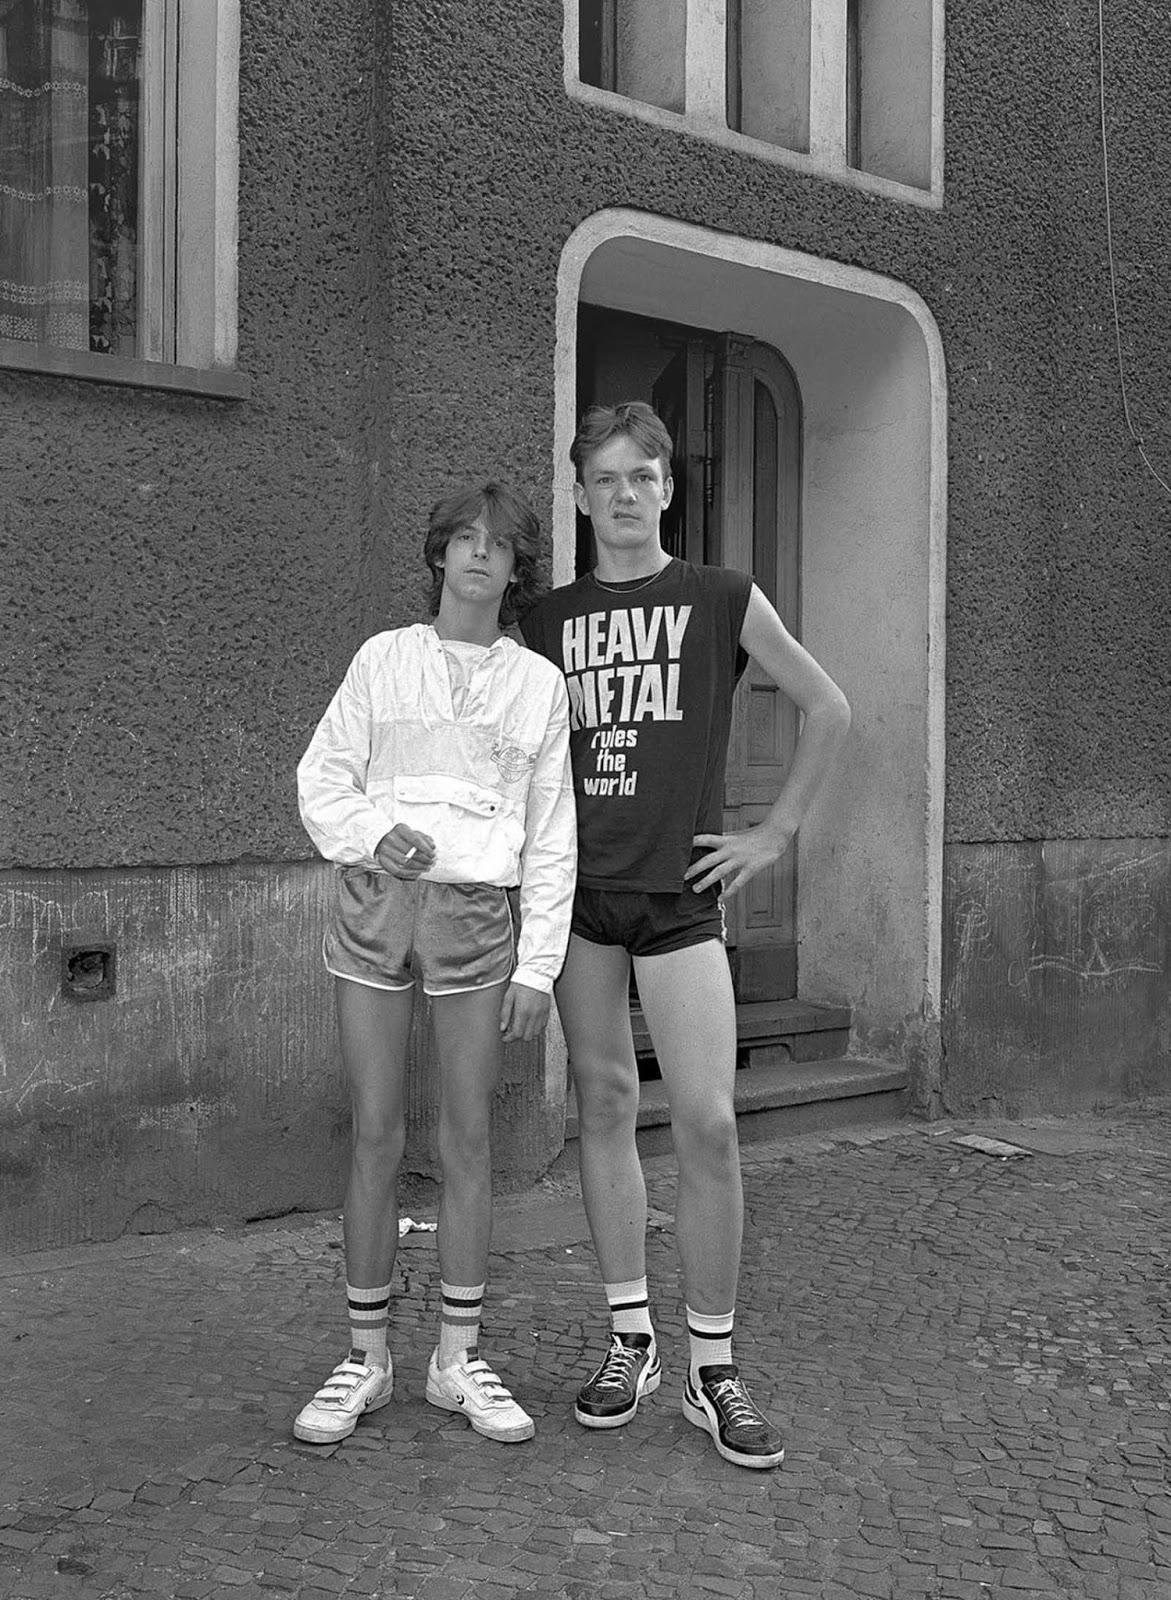 Ces images de la capture de la dynamique des résidents d'un seul à Berlin-Est, de la rue, 1986-1987